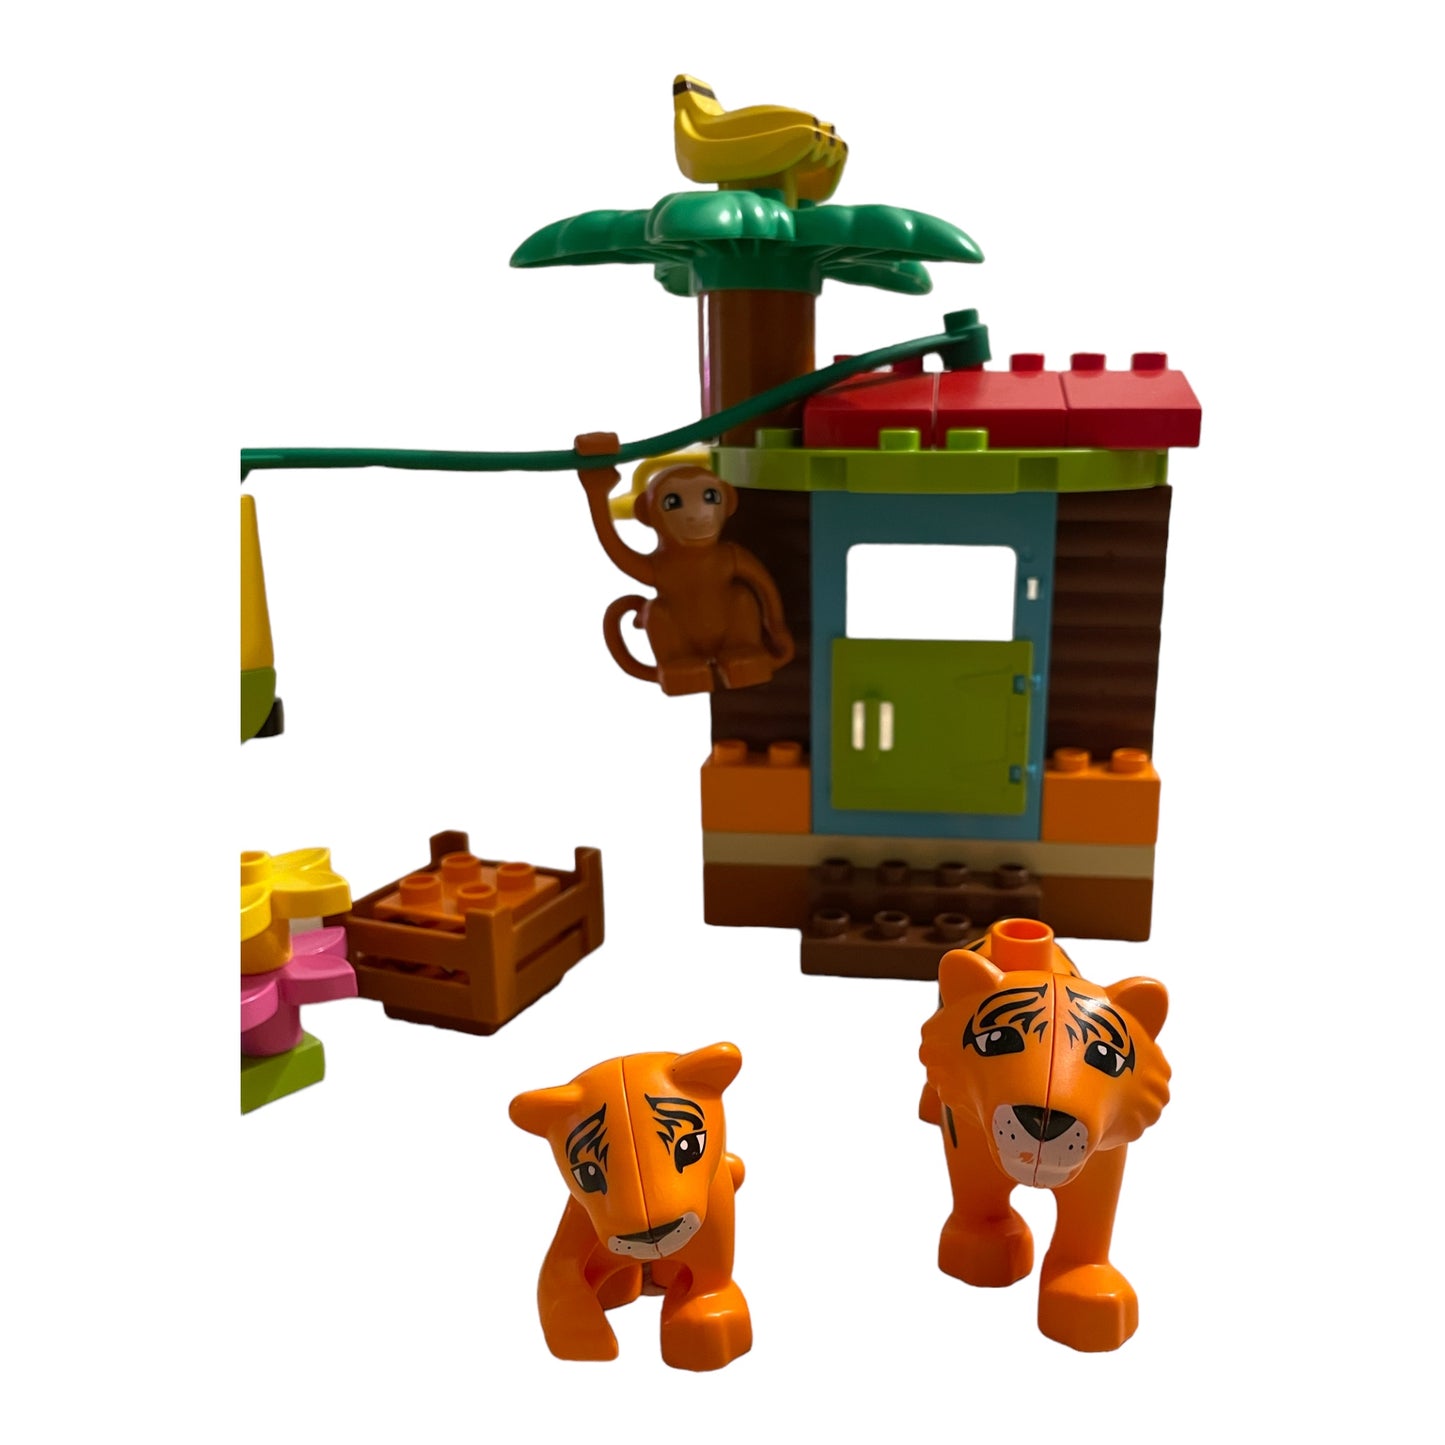 Lego Duplo Tropical Island - 10906